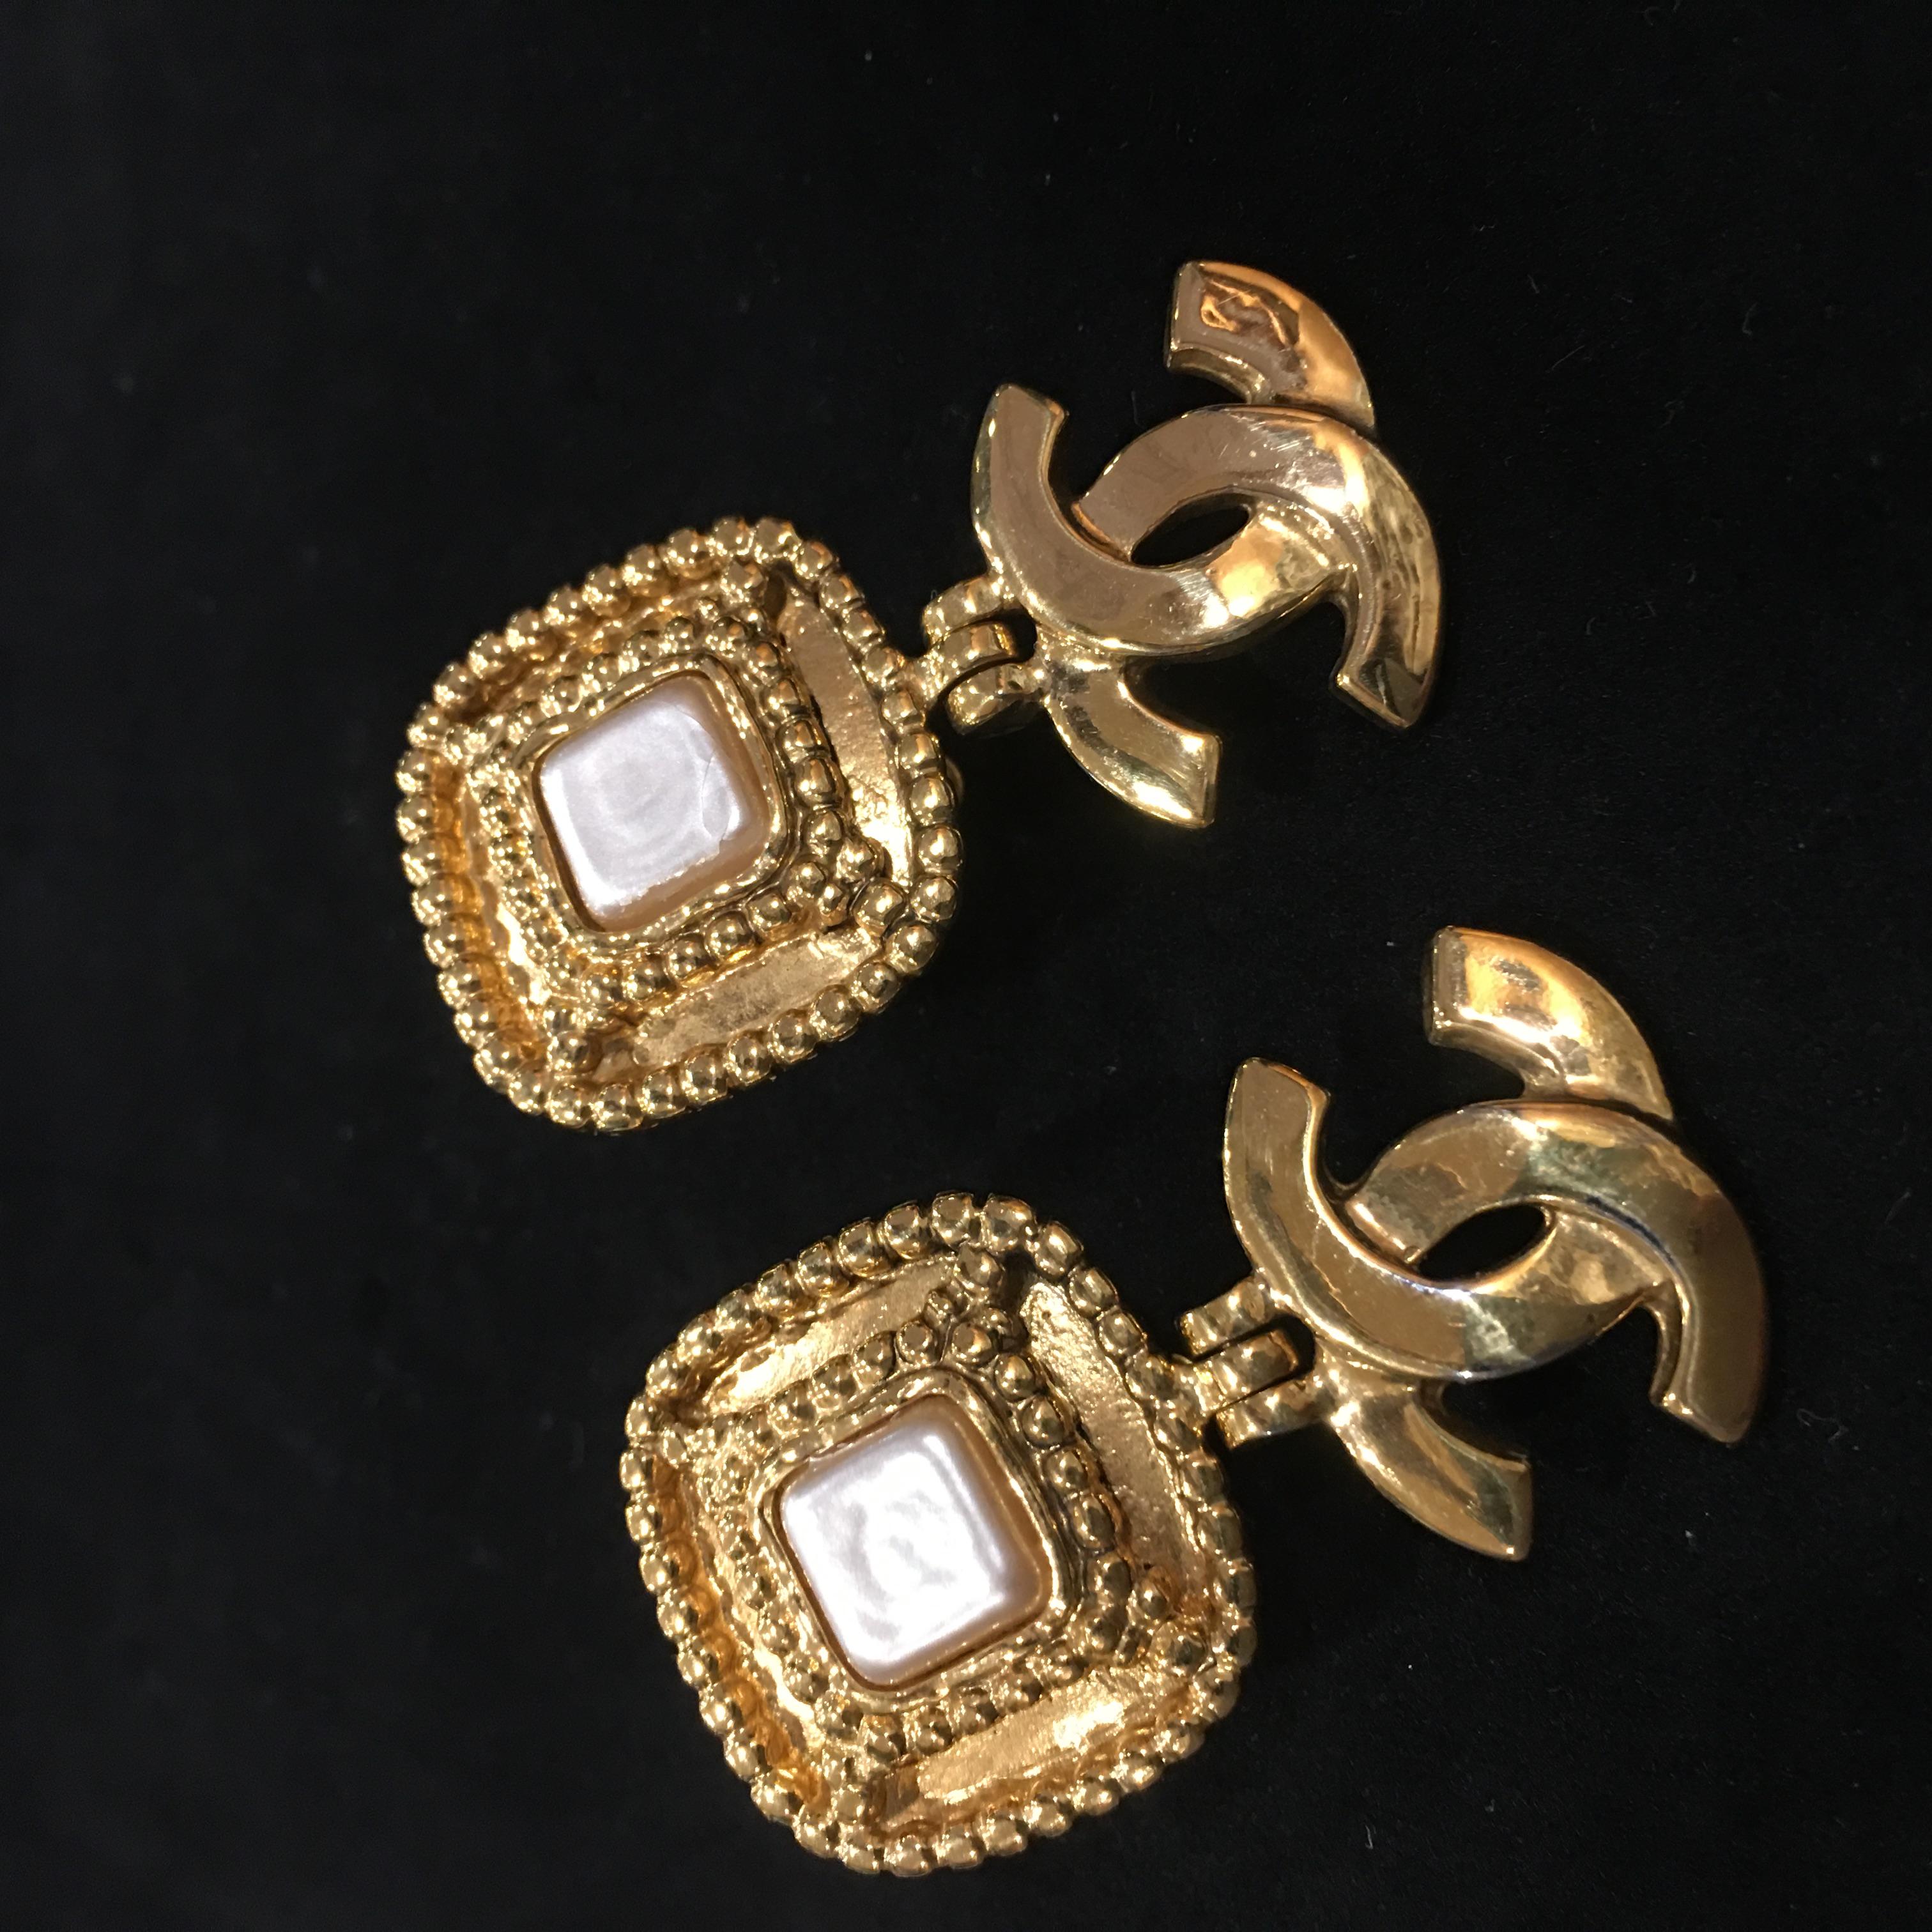 classic chanel pearl earrings